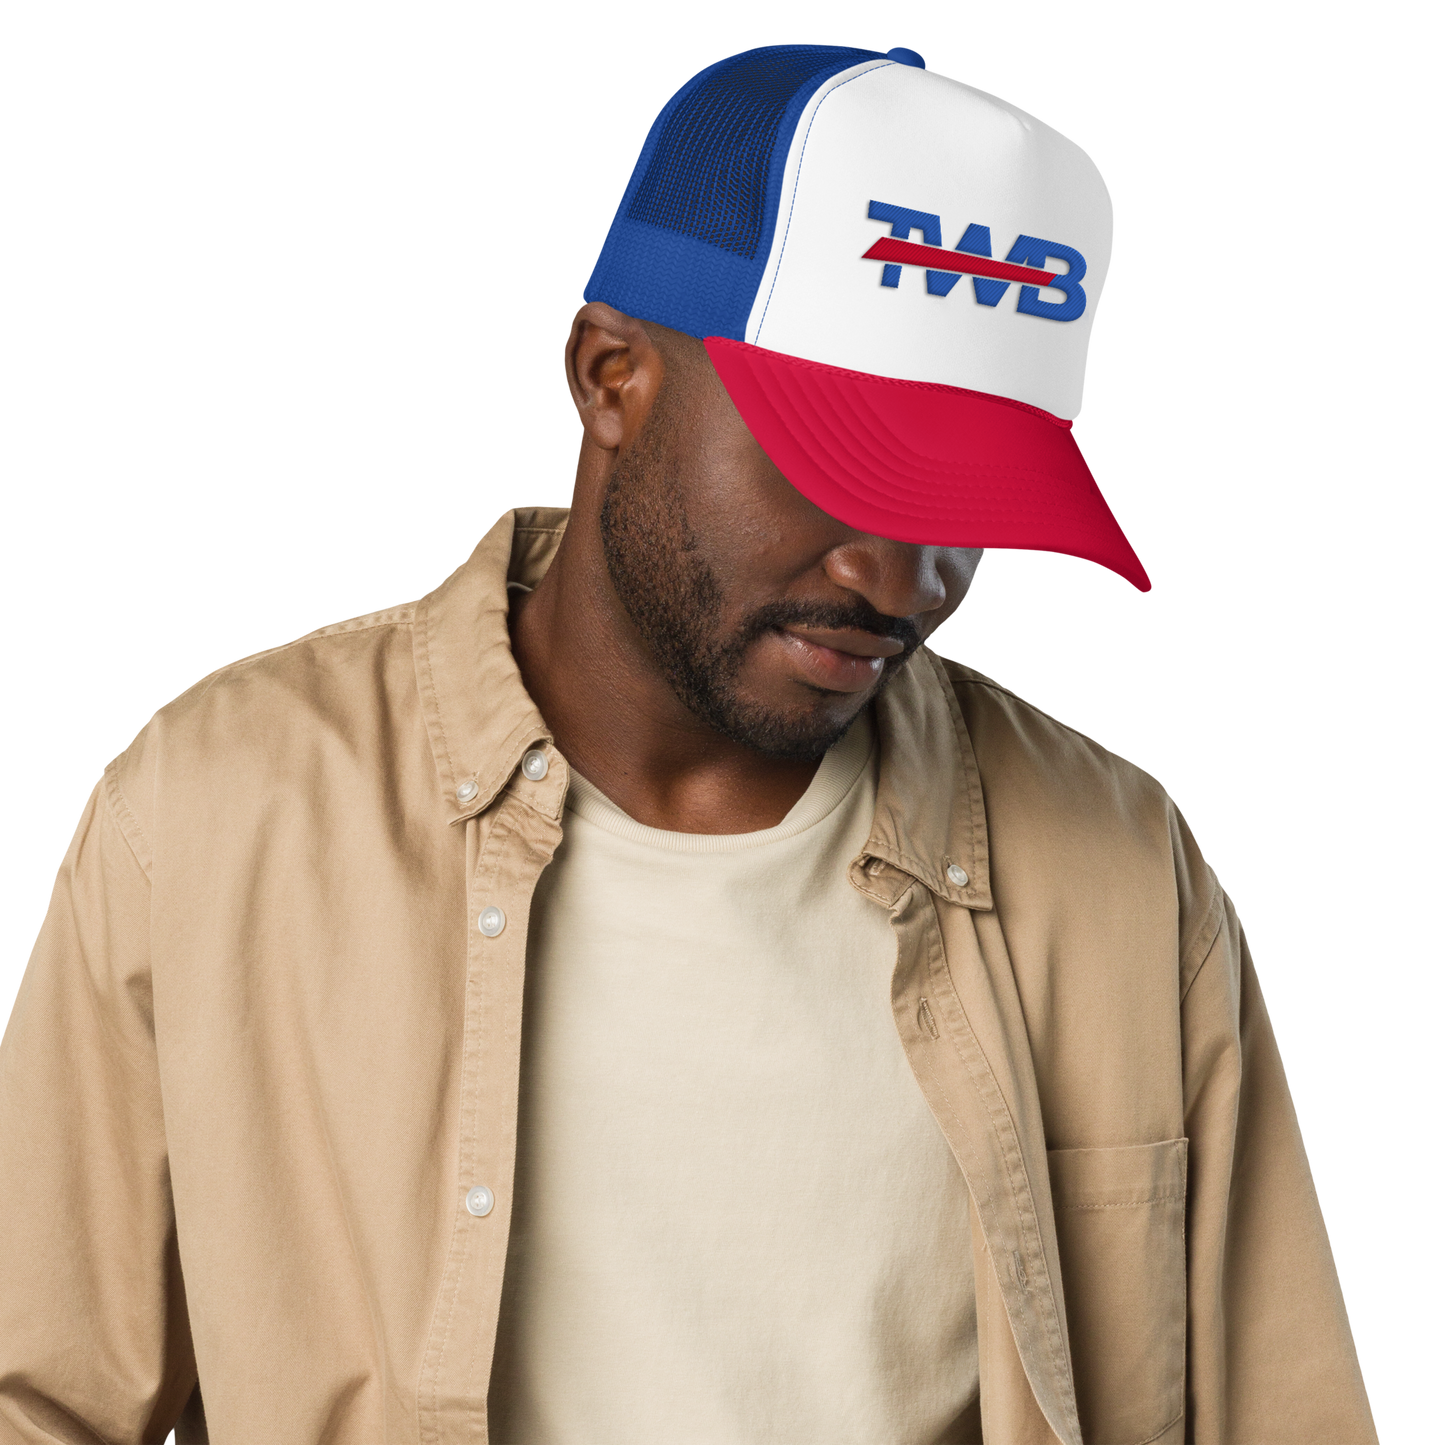 "TWB" Trucker Hat - Male Side